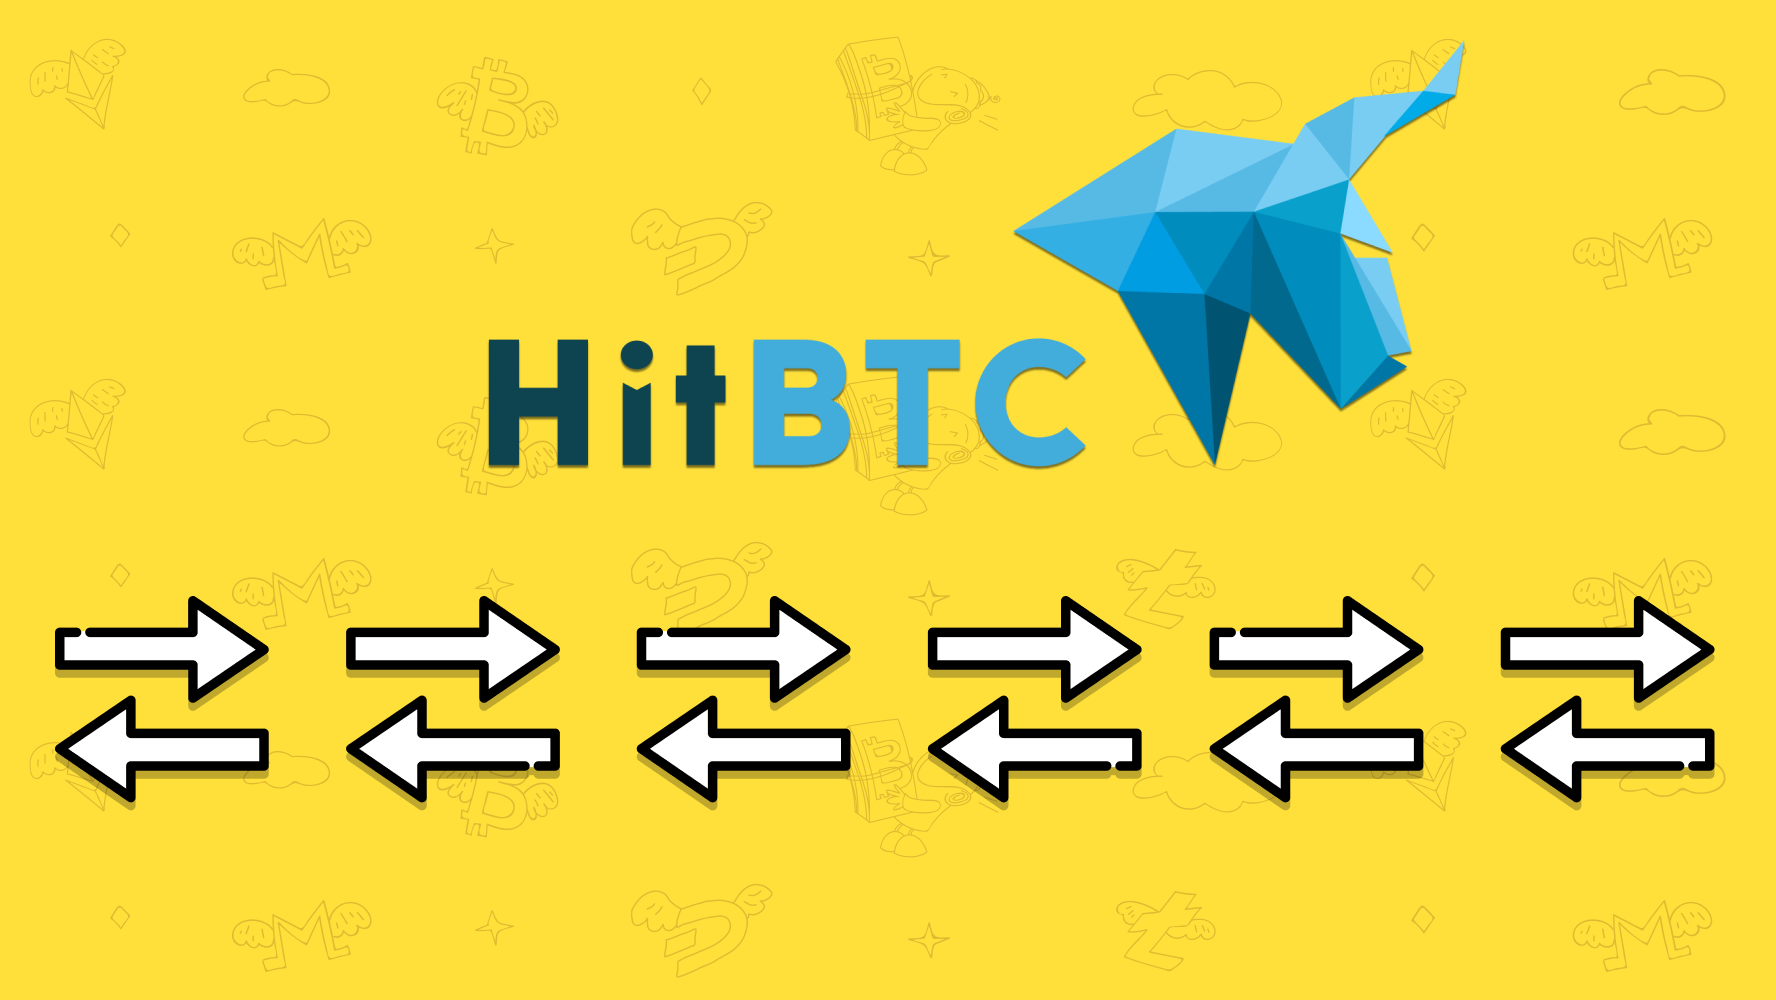 HitBTC Akhirnya Berpartnership dengan TradeSanta dan Berhasil Menciptakan 0% Trading Fee